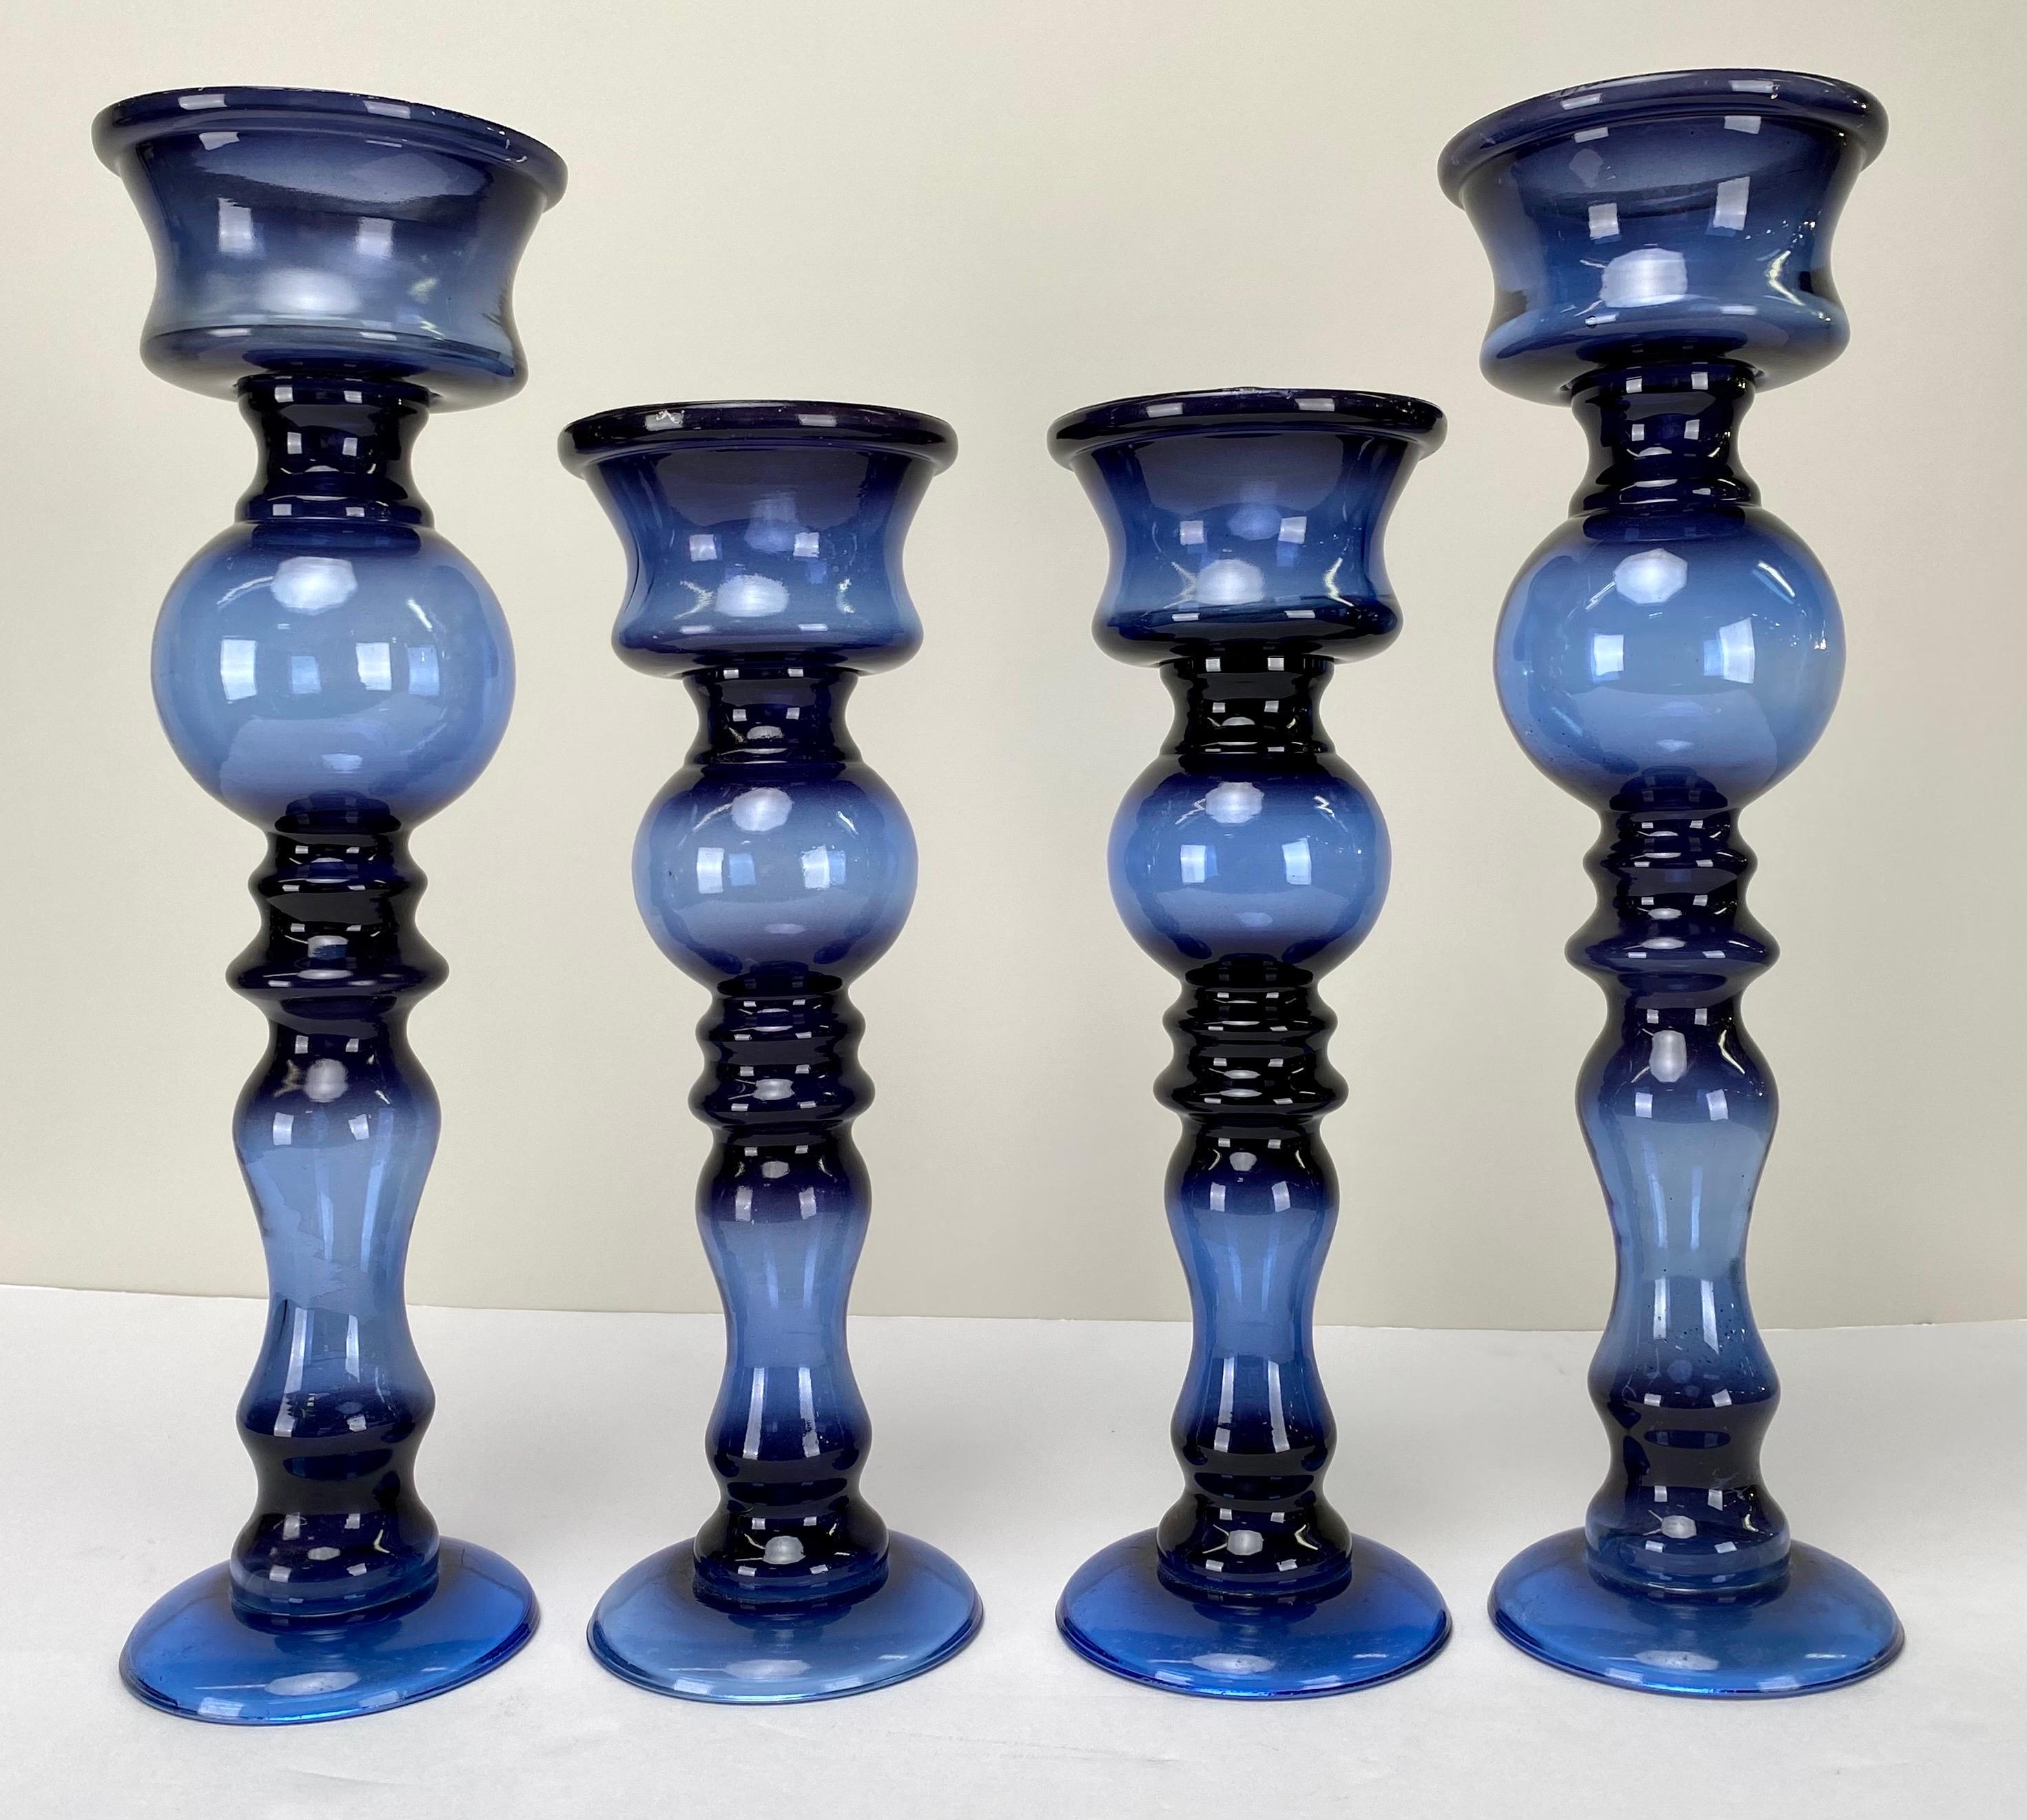 Ein Set aus vier blauen Kerzenhaltern im Art-Déco-Stil, die in einen satten, dunkelblauen Farbton getaucht sind. Dieses bezaubernde Set besteht aus zwei großartigen Kerzenhaltern und zwei kleineren Gegenstücken. Jedes Stück hat einen mit kunstvoll